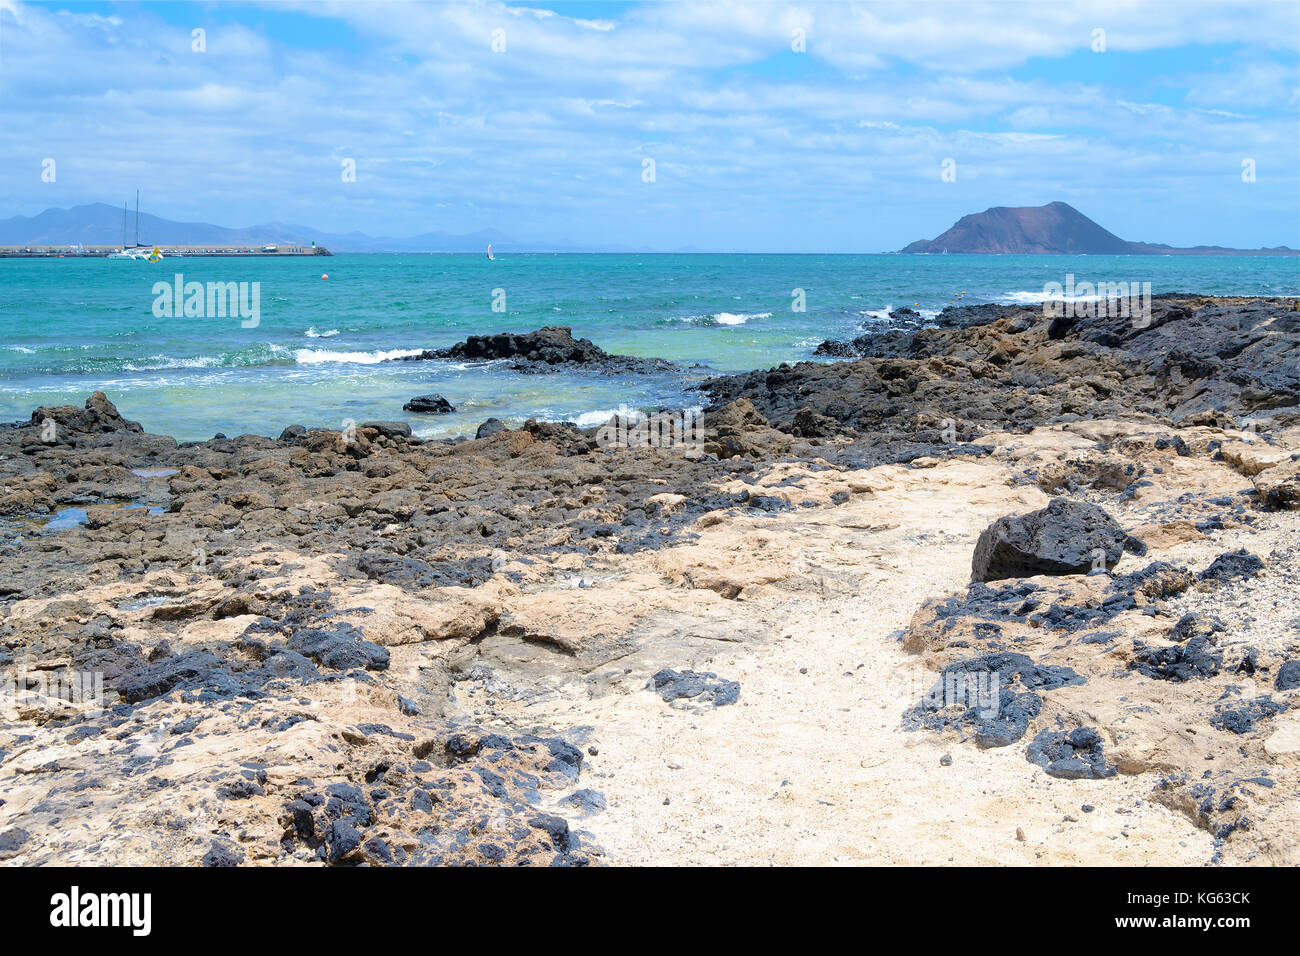 Spiaggia bianca con rocce vulcaniche nere, sul mare, Corralejo, Fuerteventura, Isole Canarie, Spagna Foto Stock